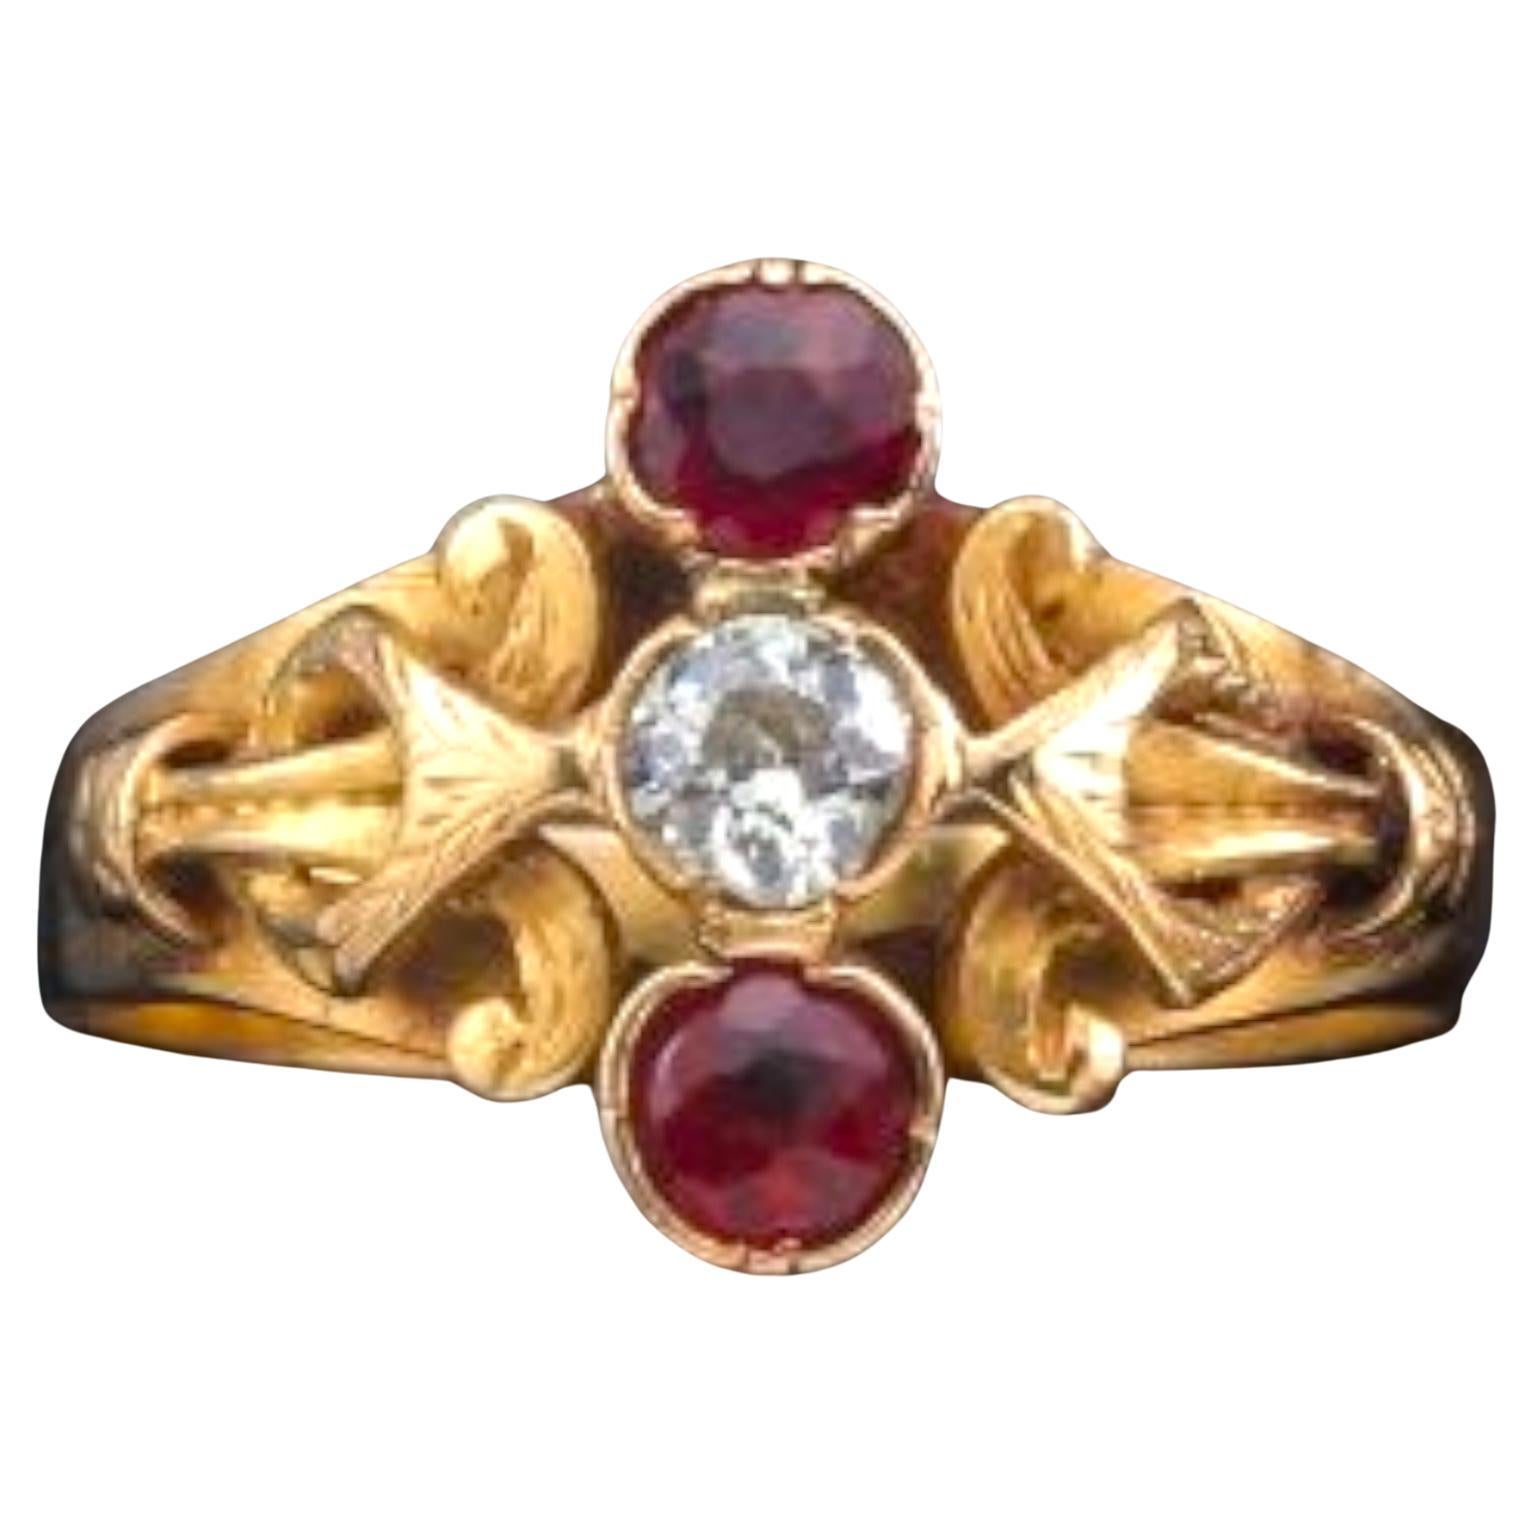 Dreisteinring im viktorianischen Stil mit Rubin und Diamant im viktorianischen Stil